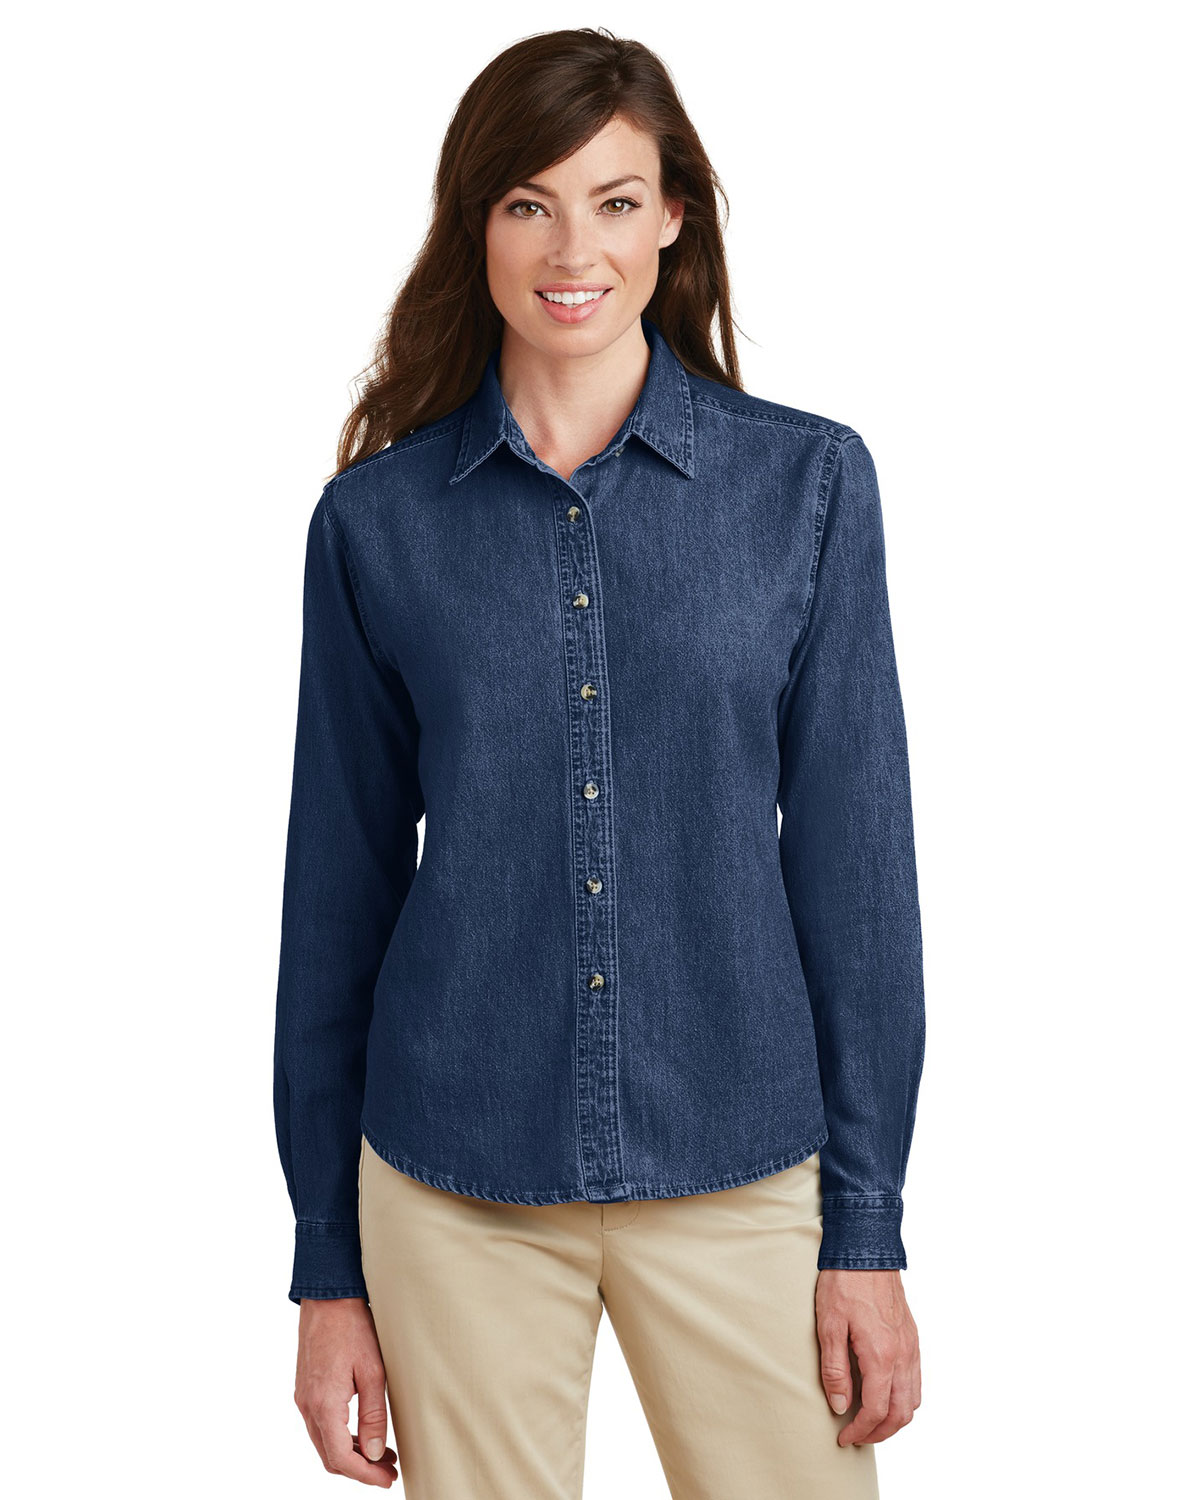 Port & Company LSP10 Women Long-Sleeve Value Denim Shirt | GotApparel.com